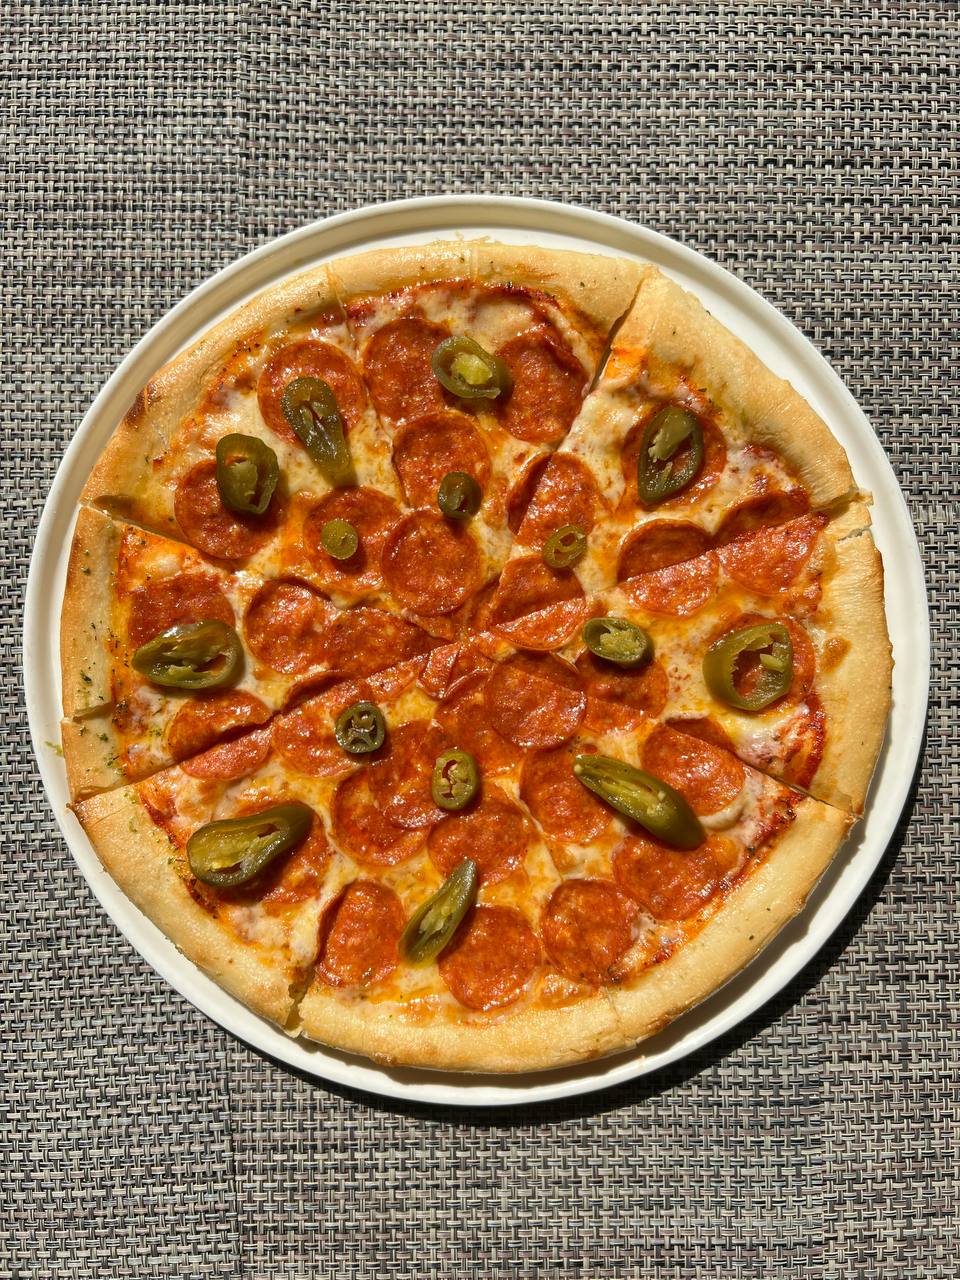 состав начинки пиццы пепперони фото 119